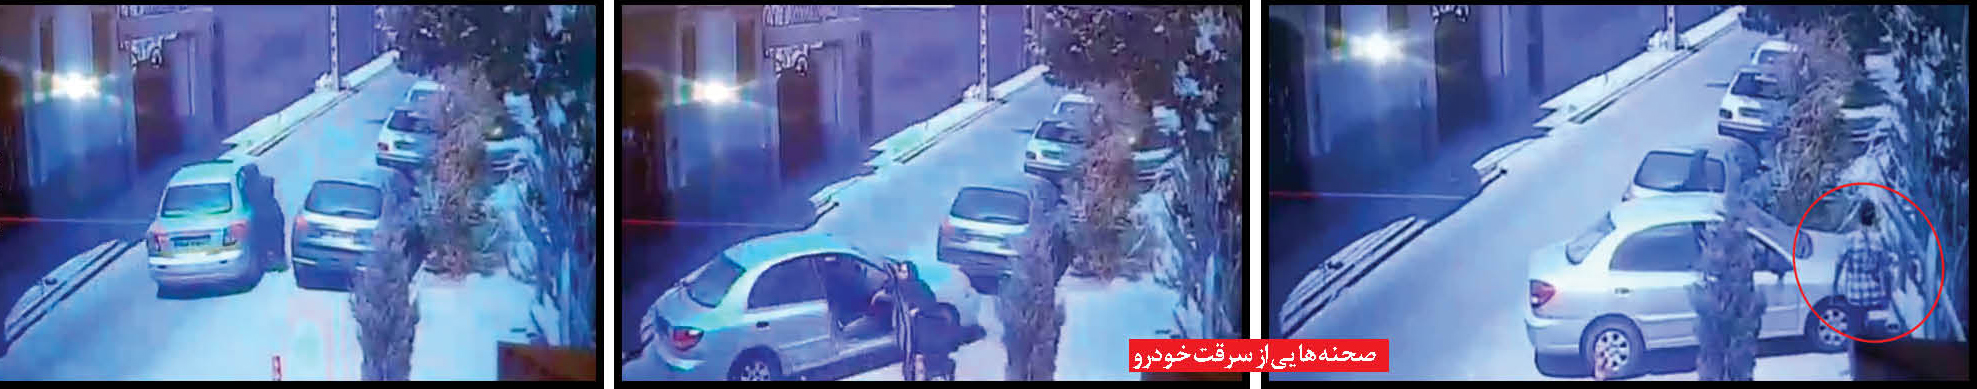 فرمانده انتظامی مشهد از دستگیری دزدی خبر داد که در فضای مجازی جنجال به پا کرد